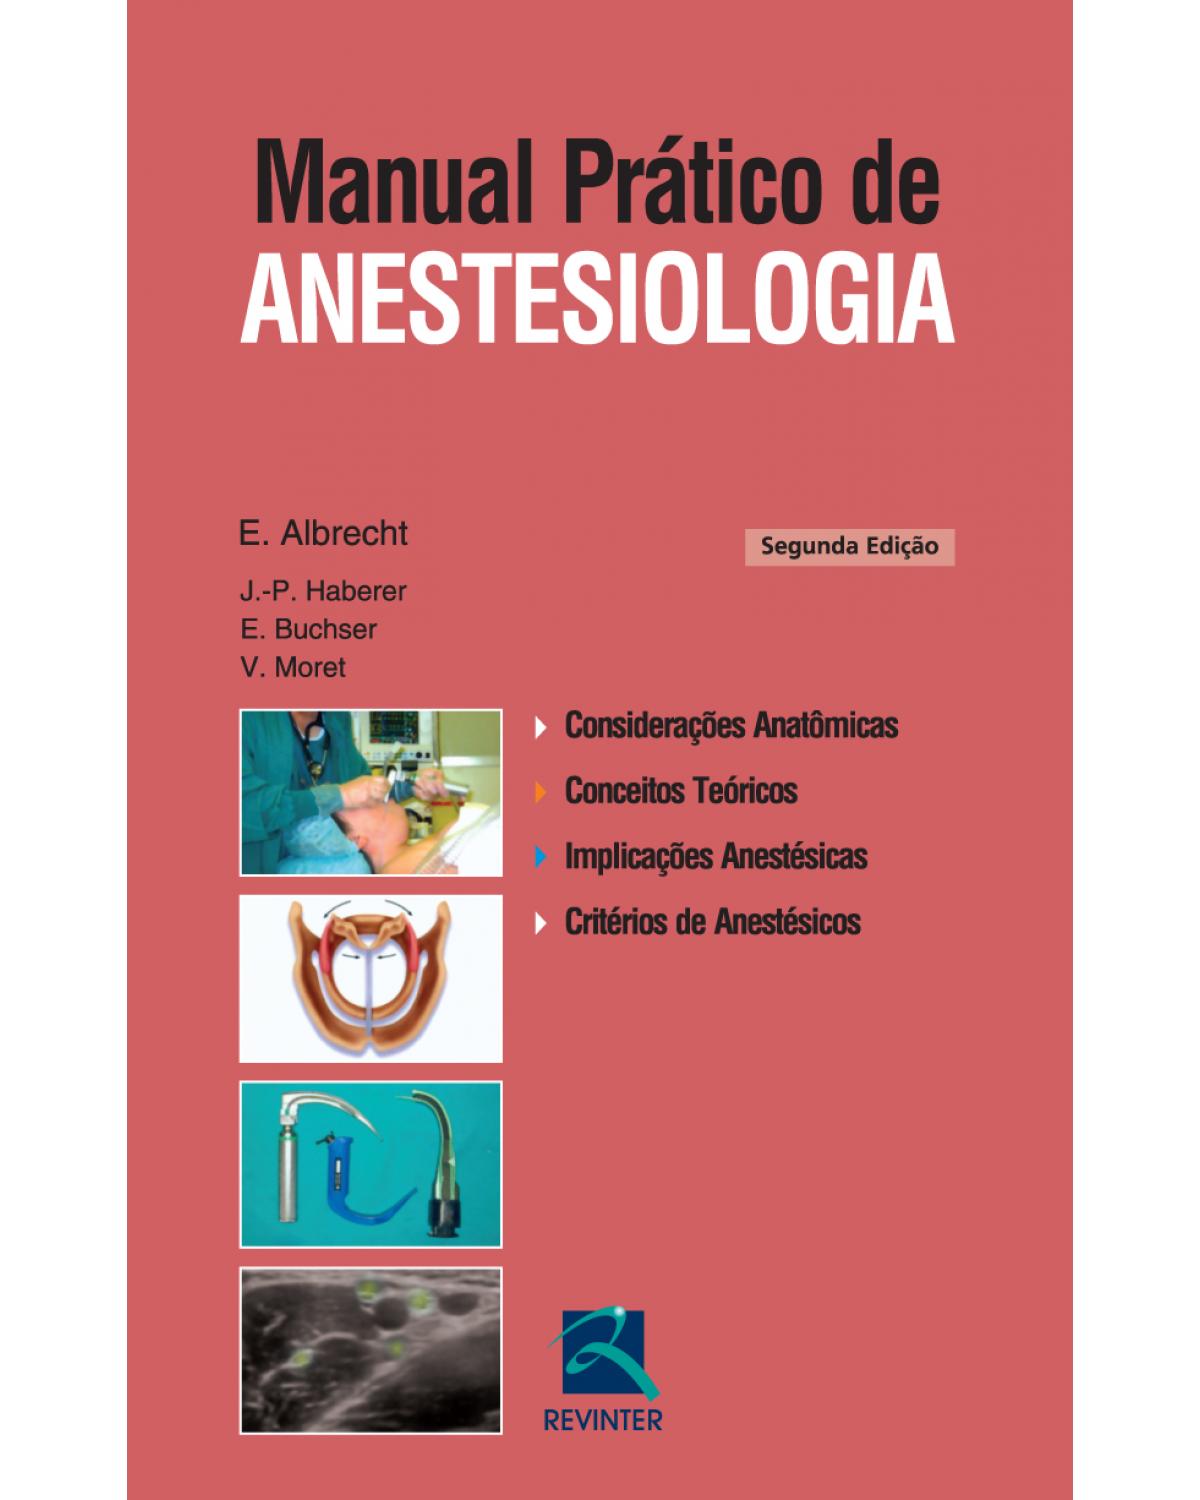 Manual prático de anestesiologia - 2ª Edição | 2013